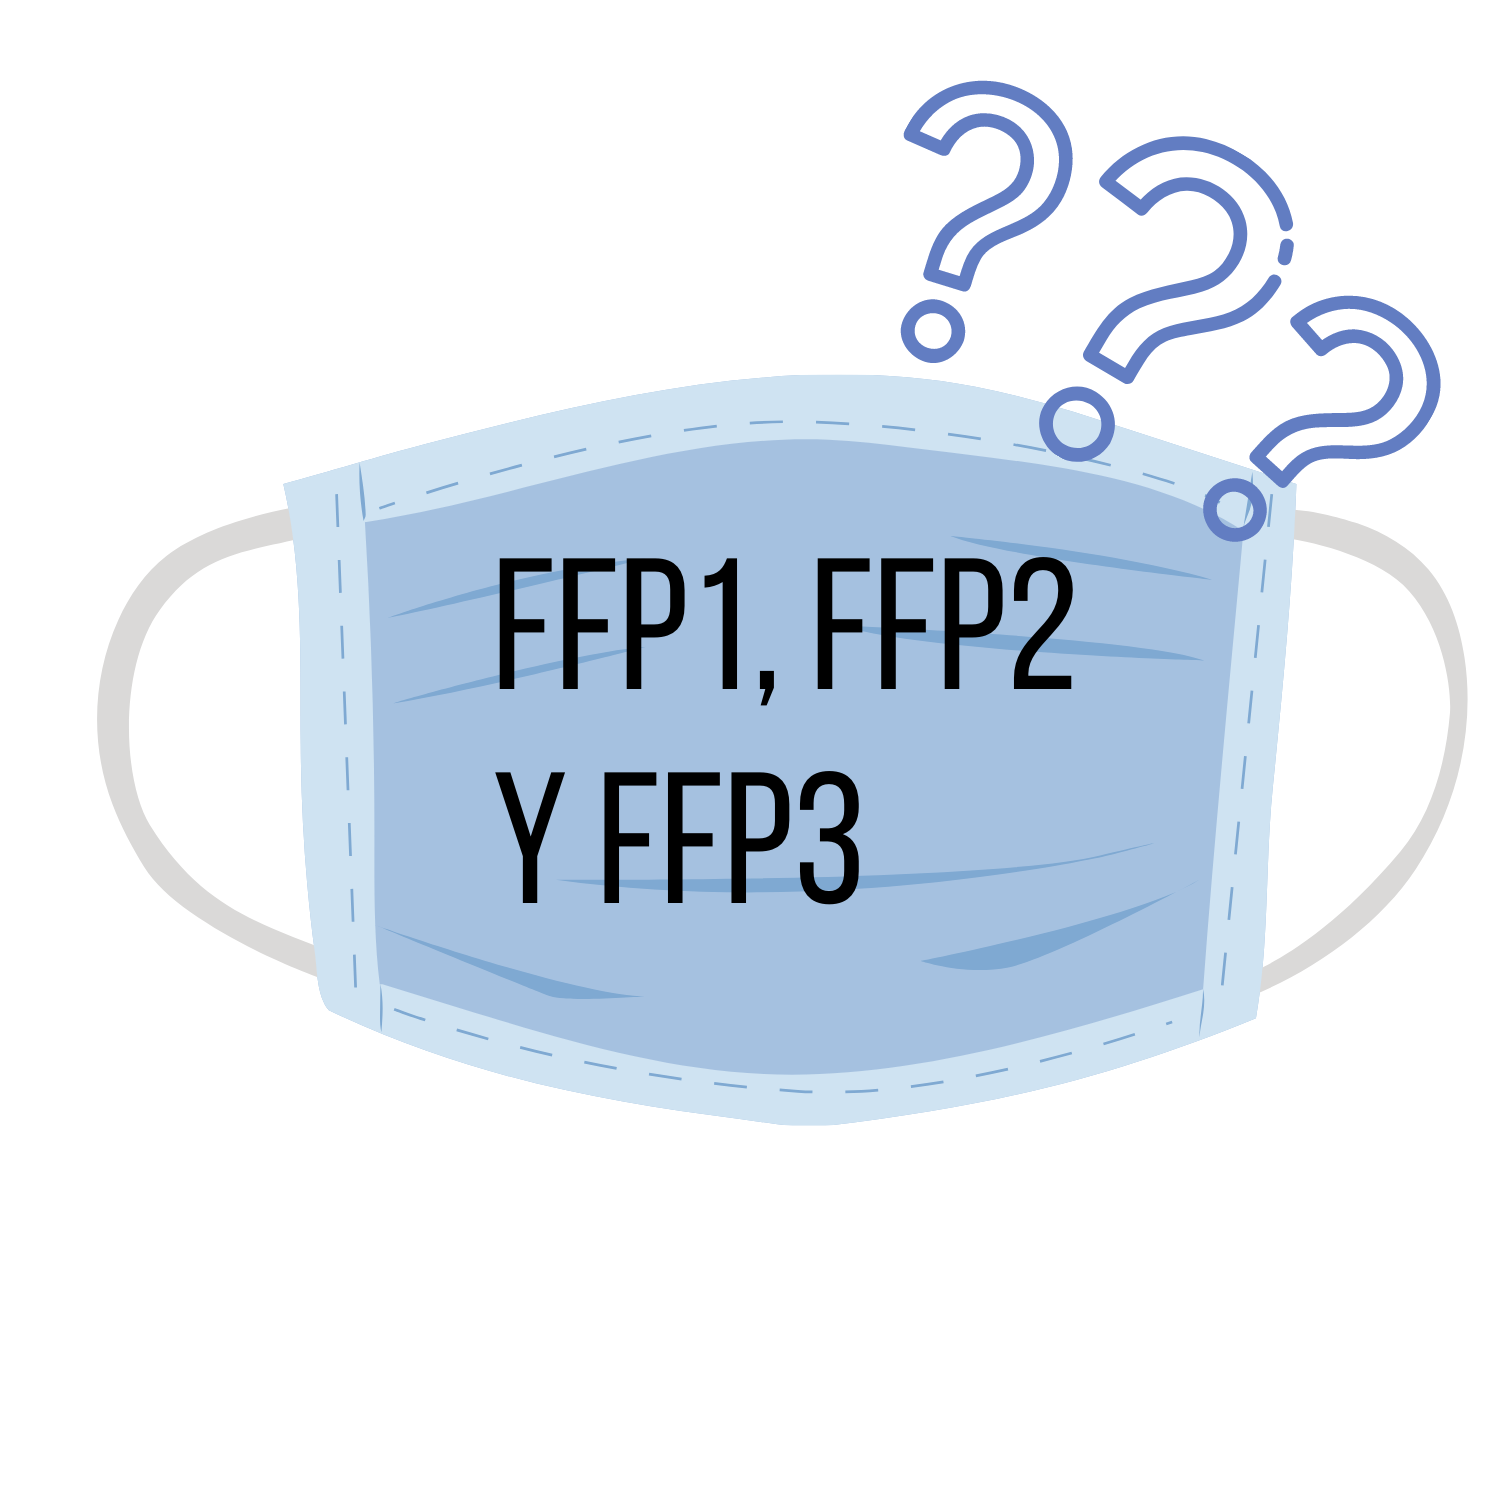 Qué significa FFP1, FFP2, FFP3 en las mascarillas